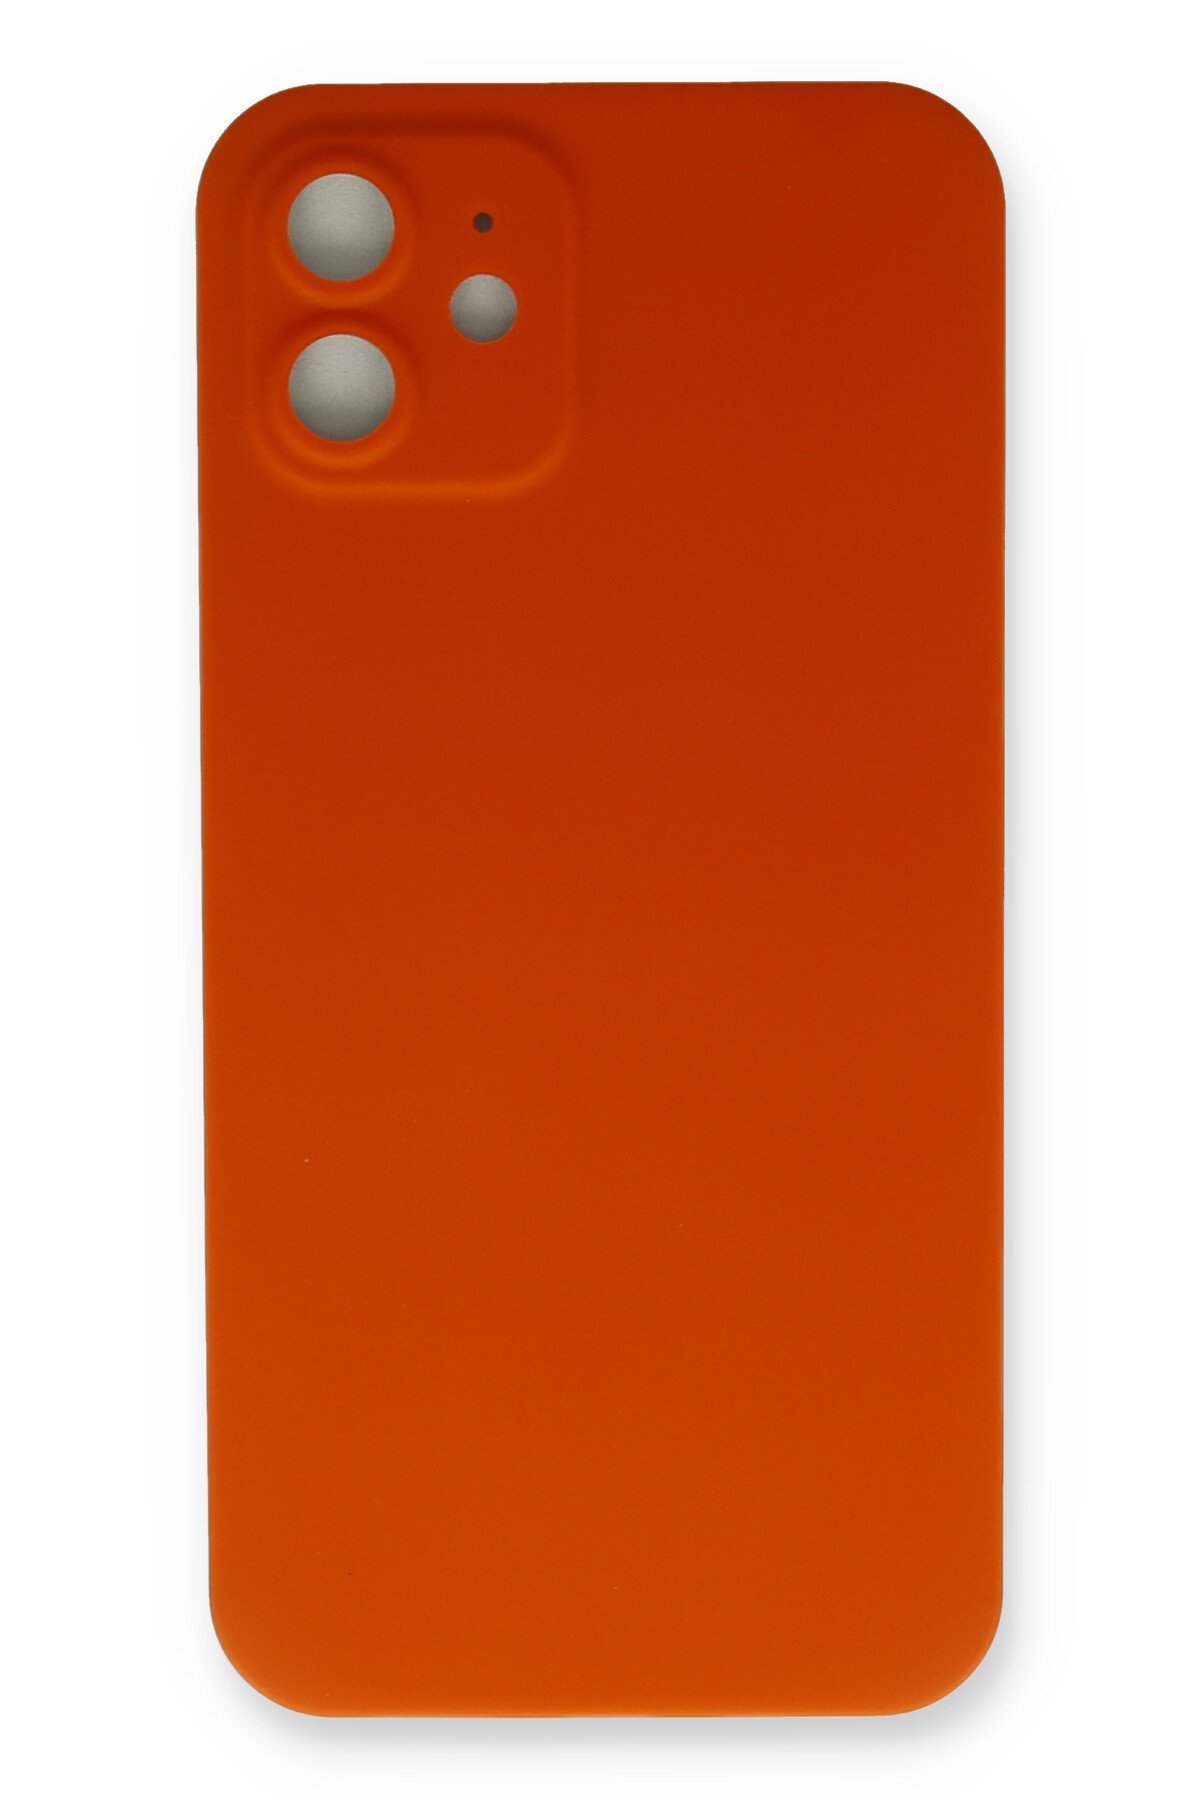 Newface iPhone 11 Kılıf Slot Silikon - Kırmızı